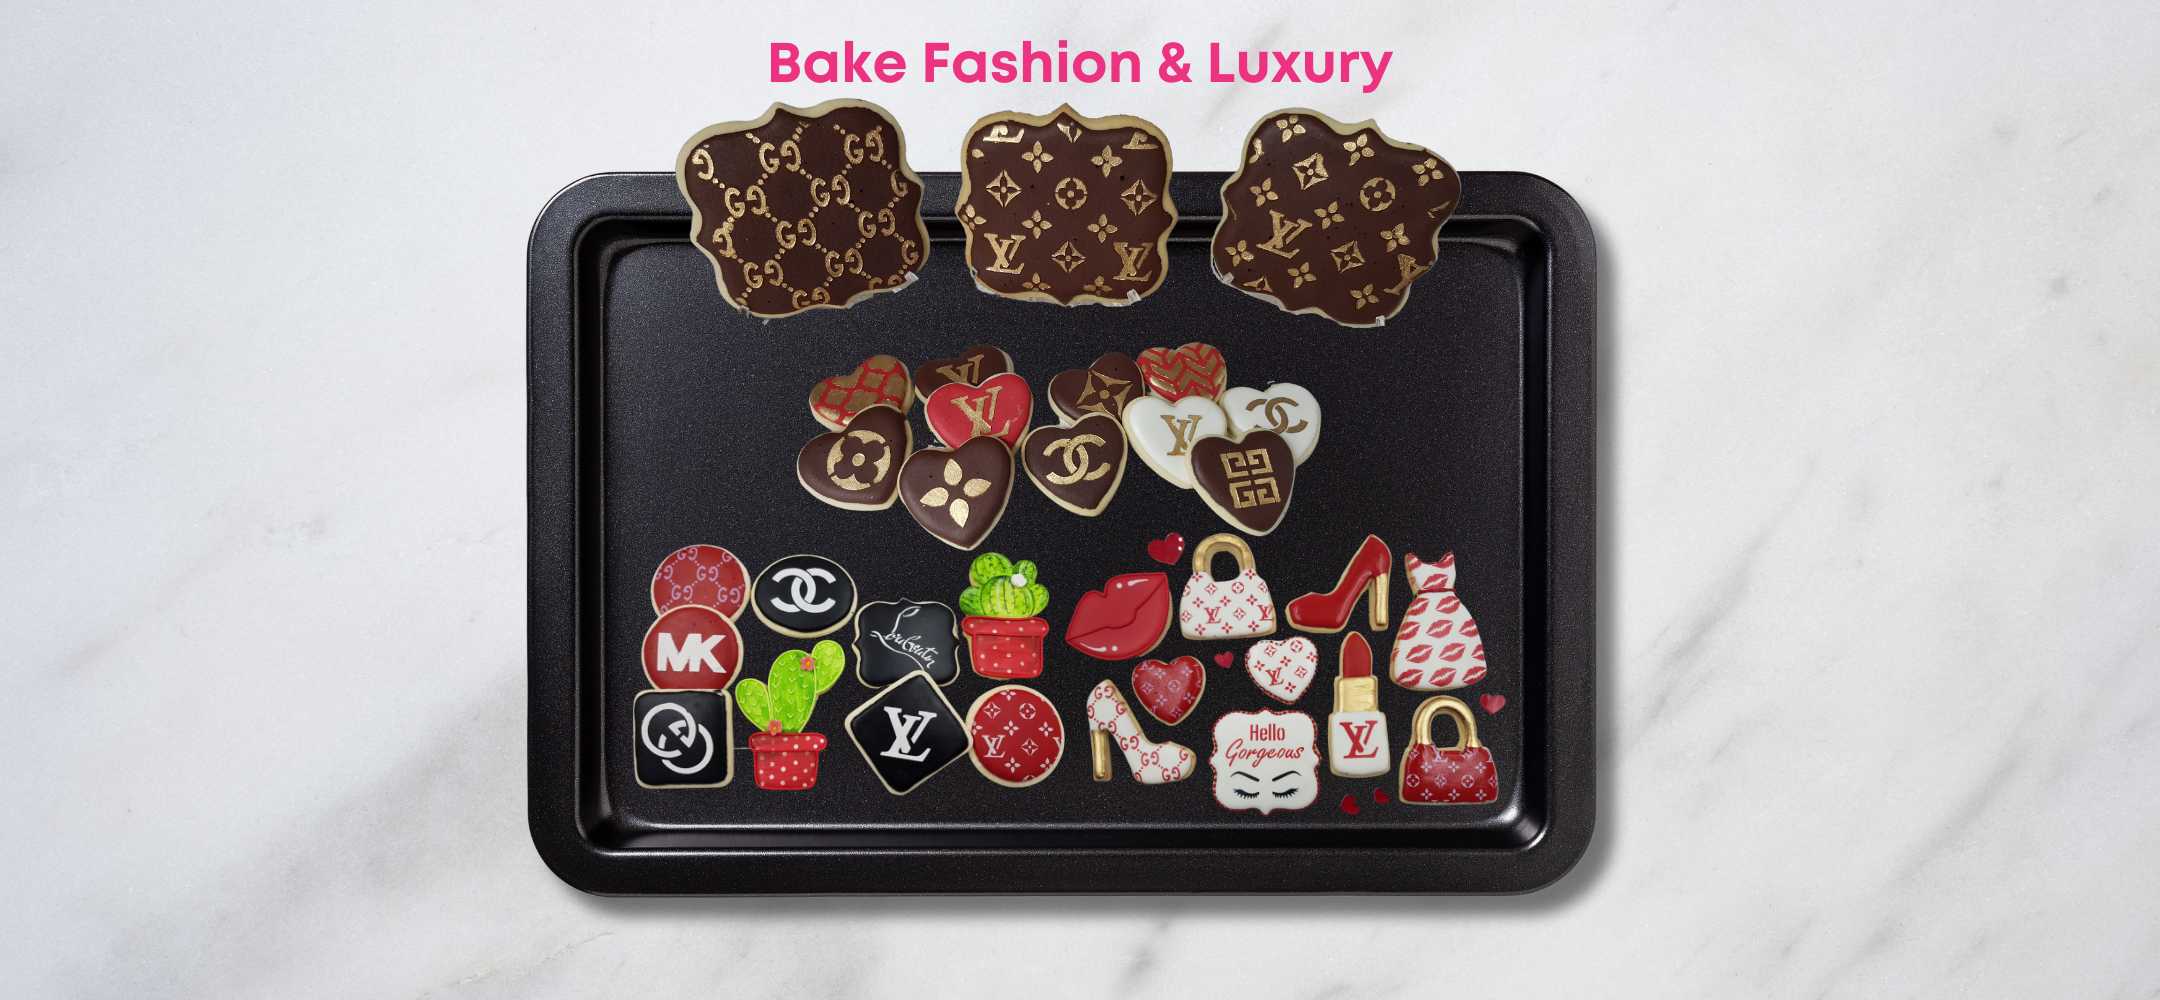 8 pcs LV Designer Fashion Cake Stencil, Cookie Stencil, Schablone Kuchen